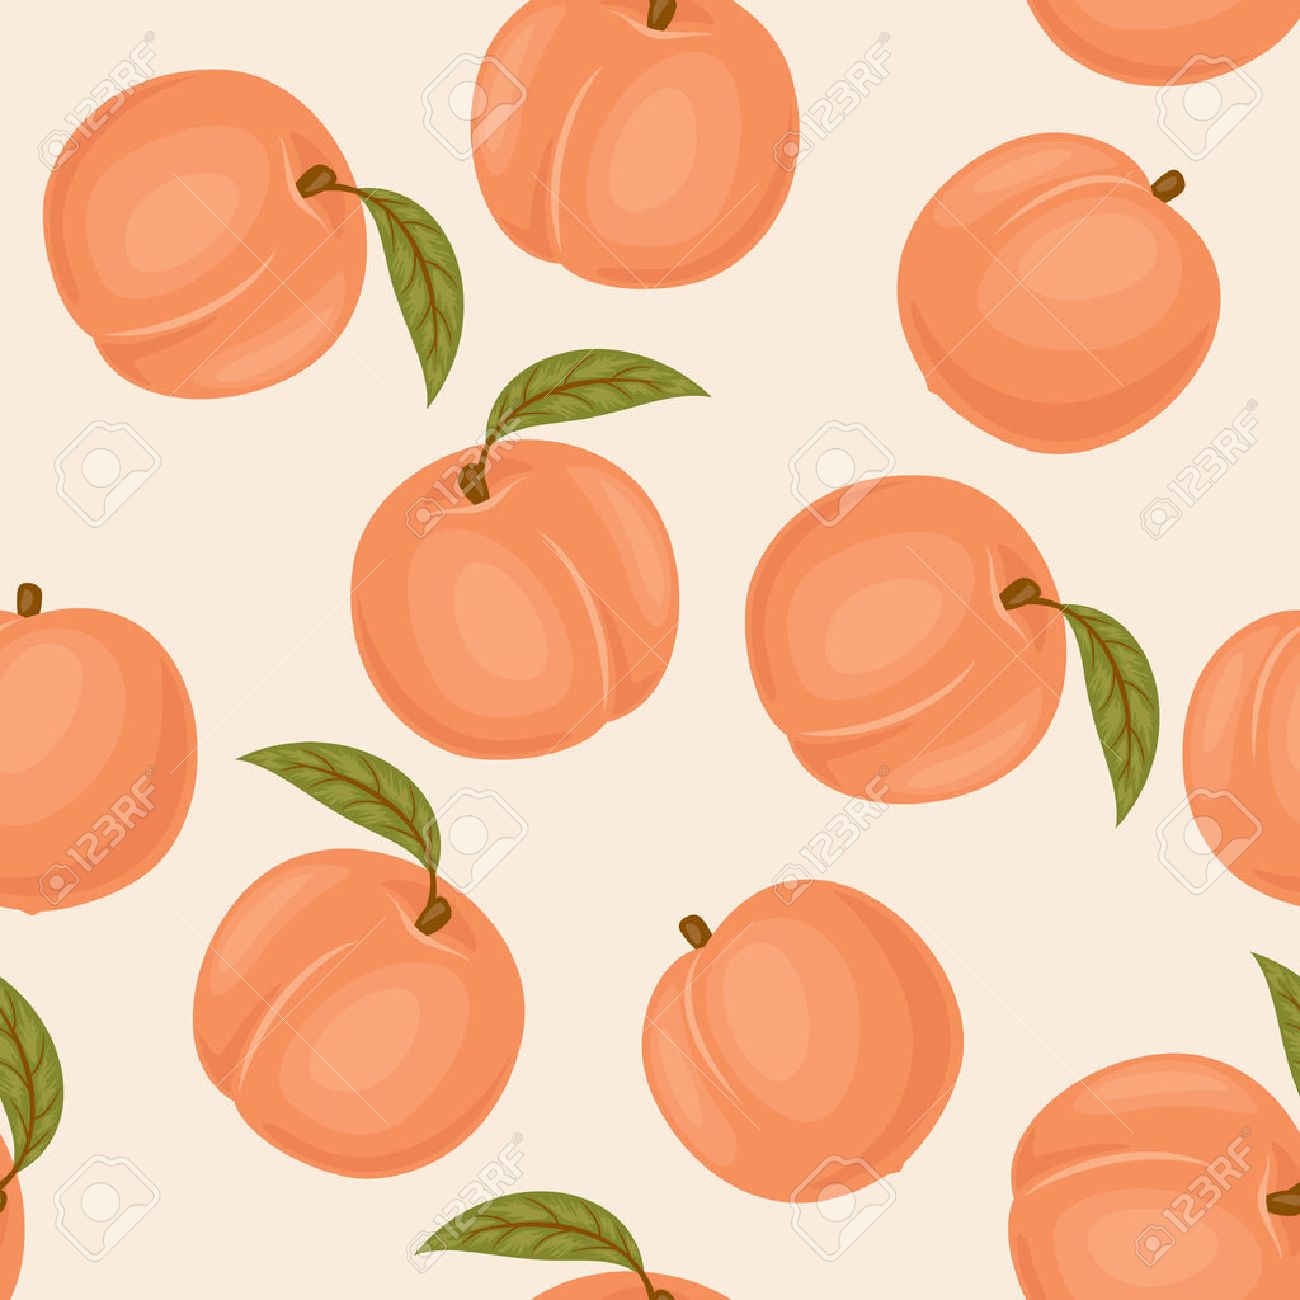 🔥 [22+] Peaches Wallpapers | WallpaperSafari